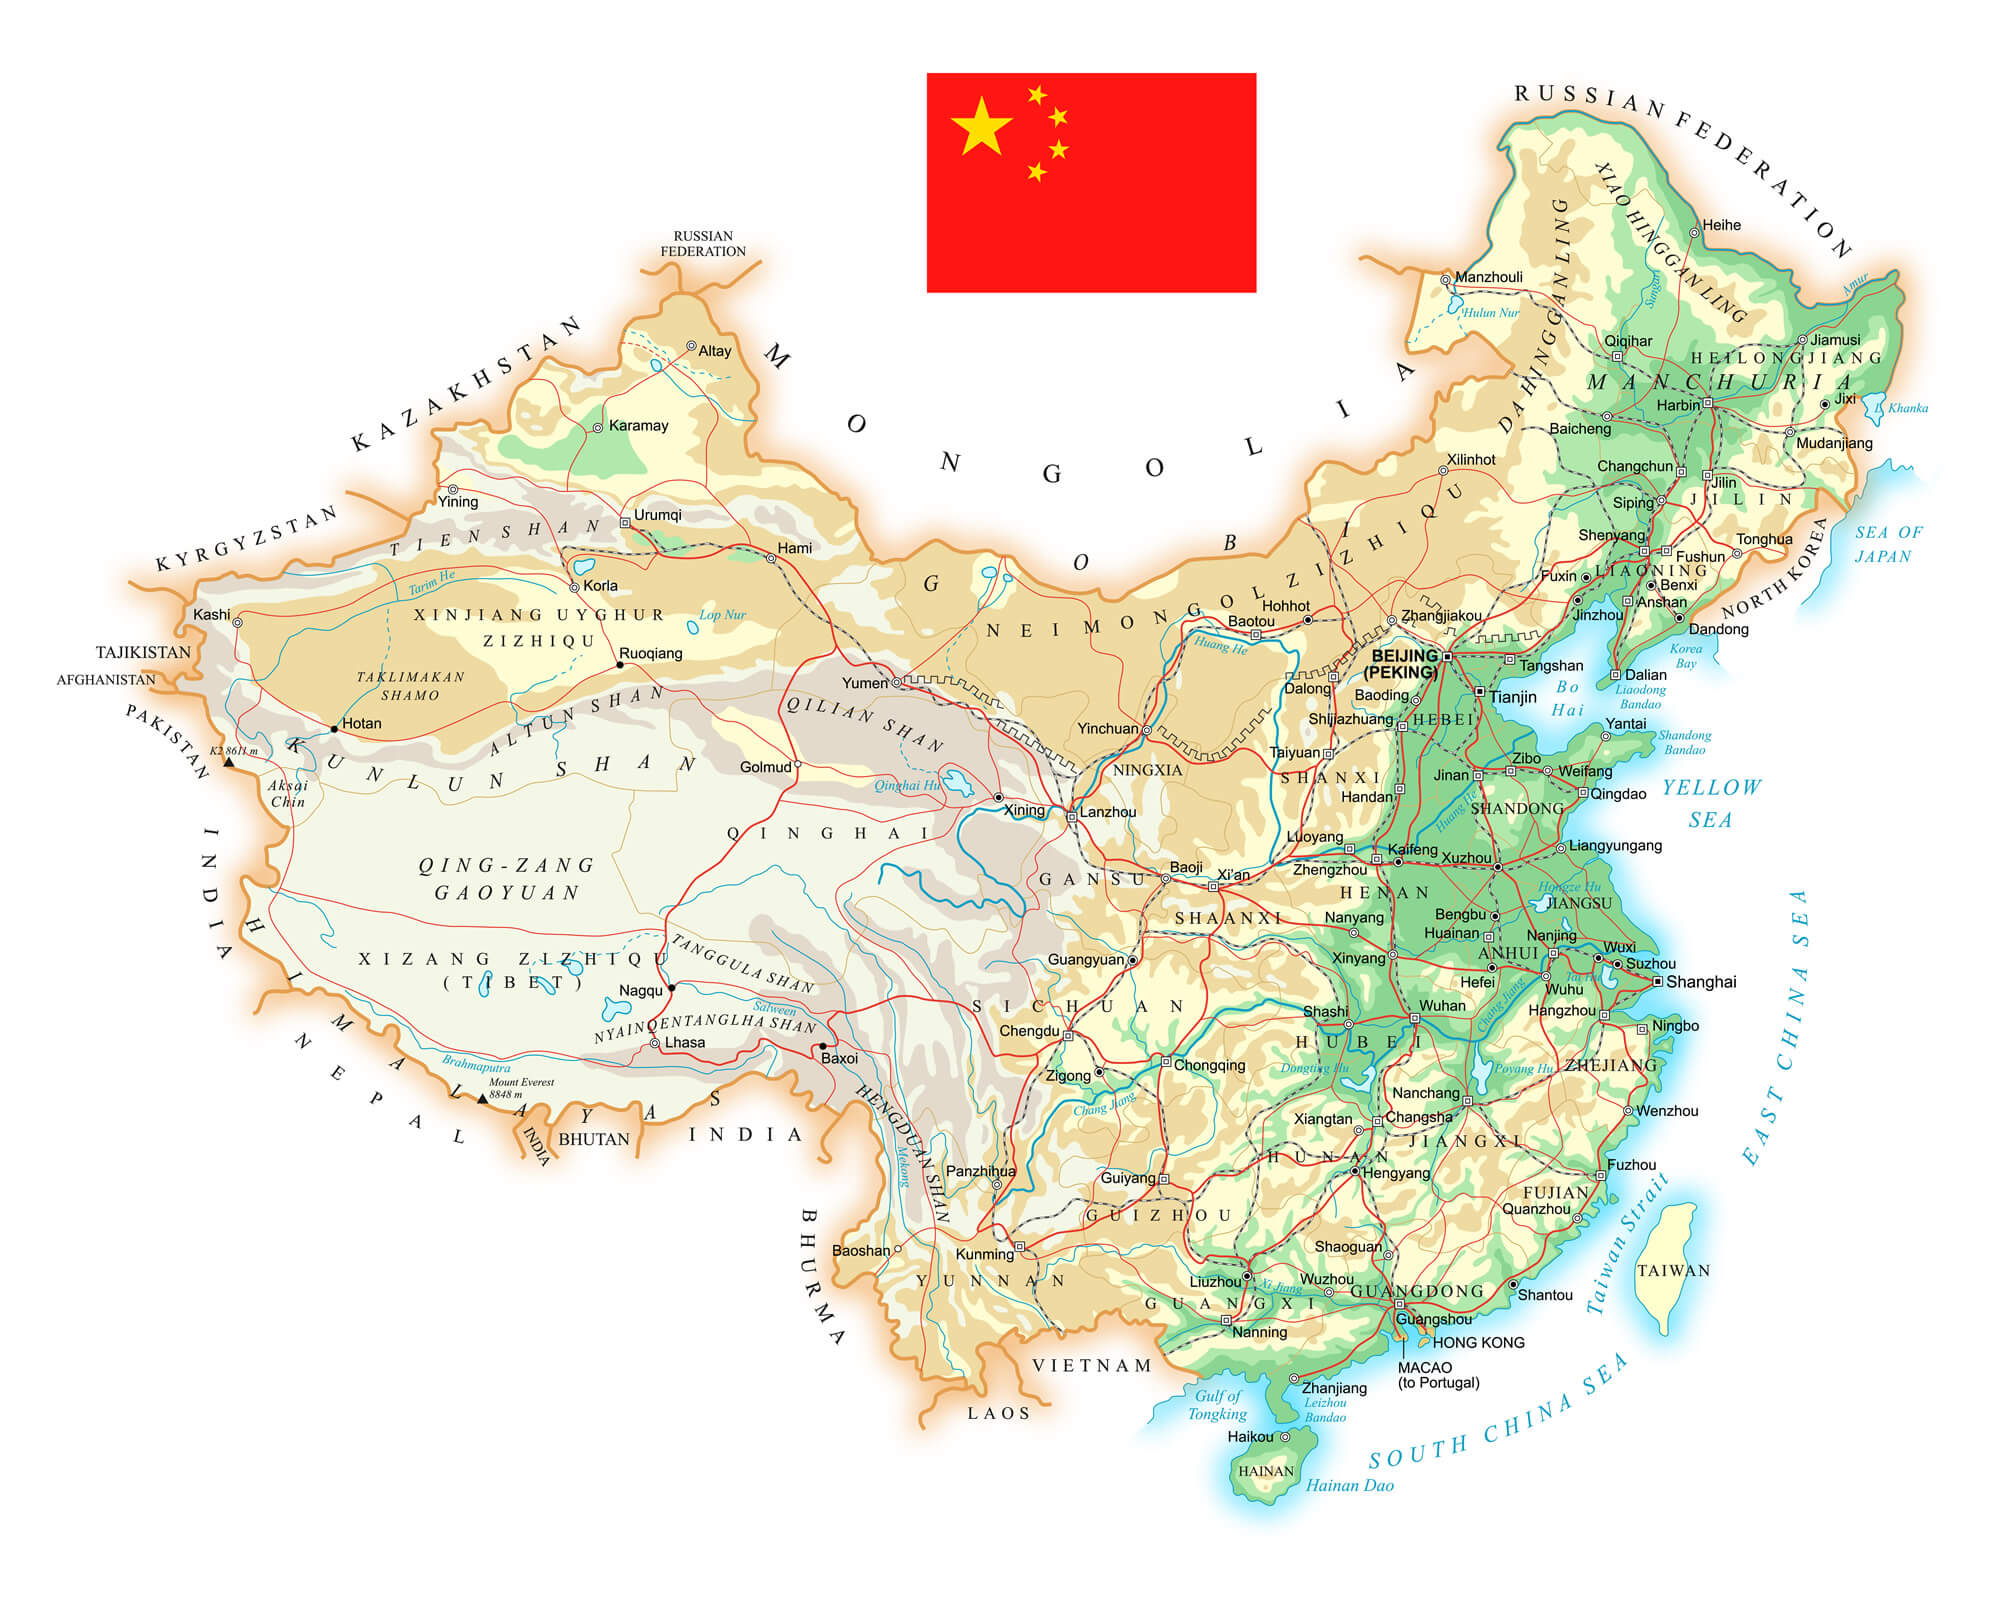 Hong Kong China Map